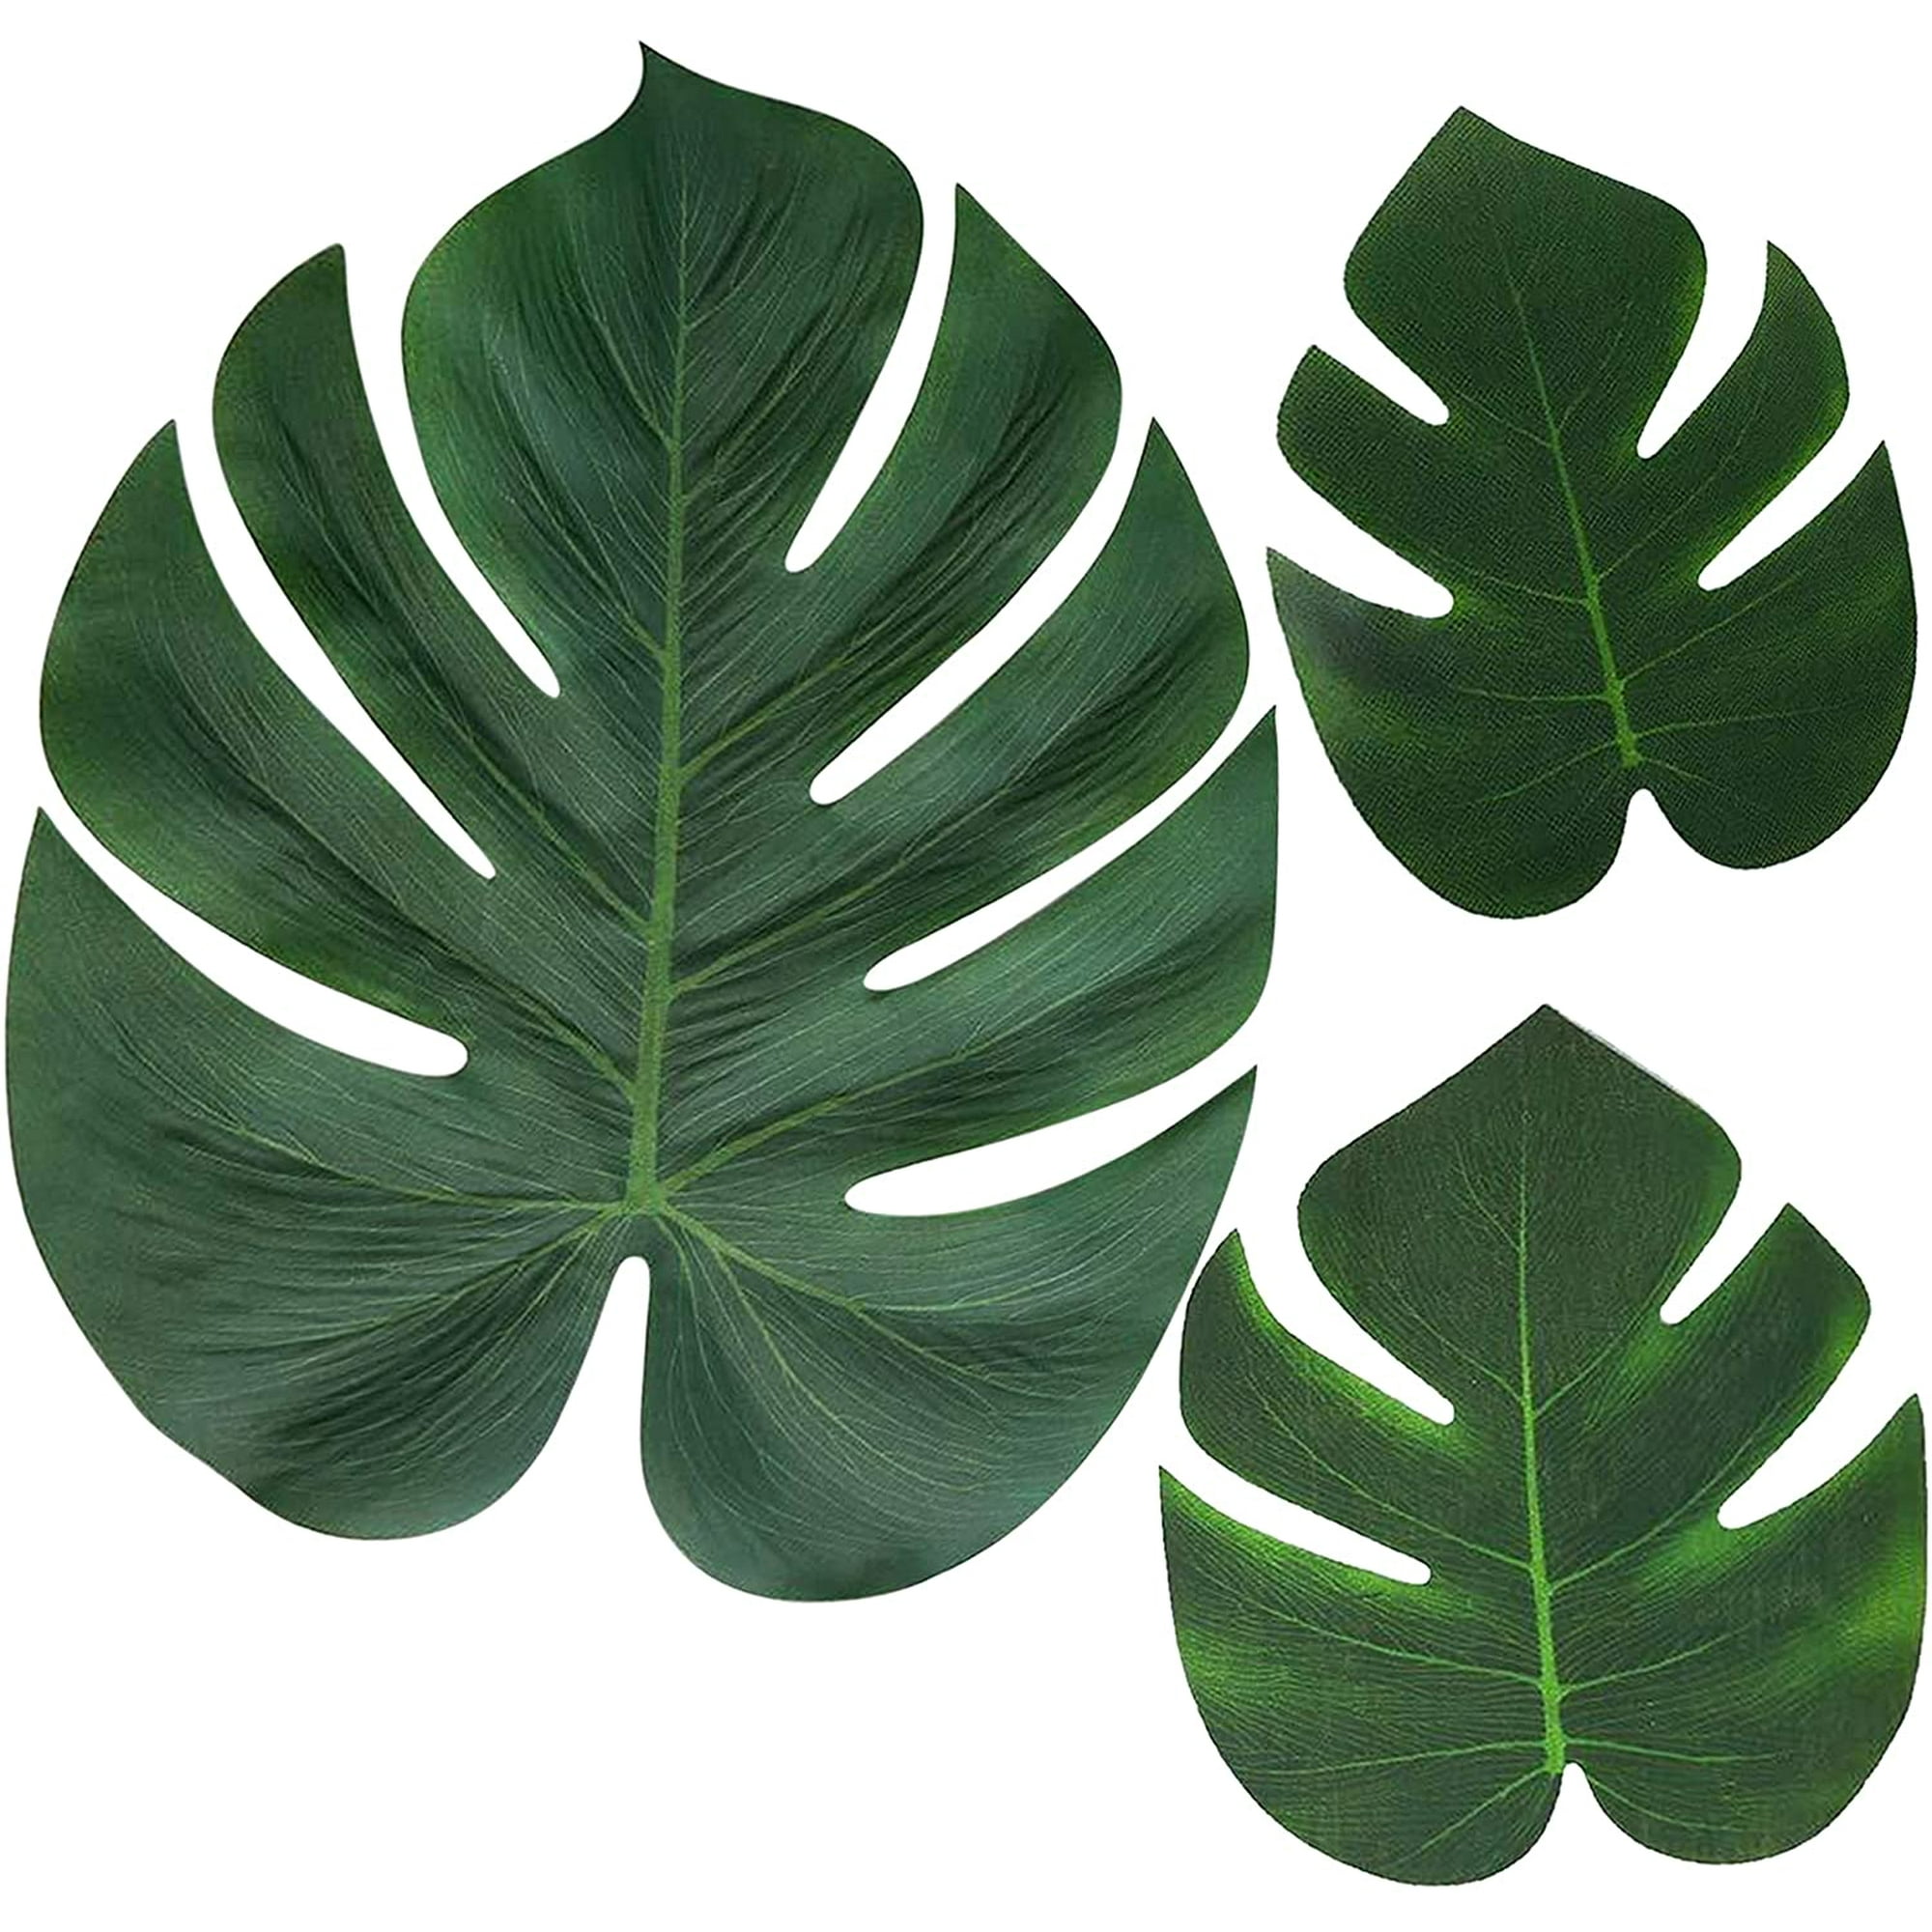 Comprar diferentes modelos en hojas artificiales decorativas